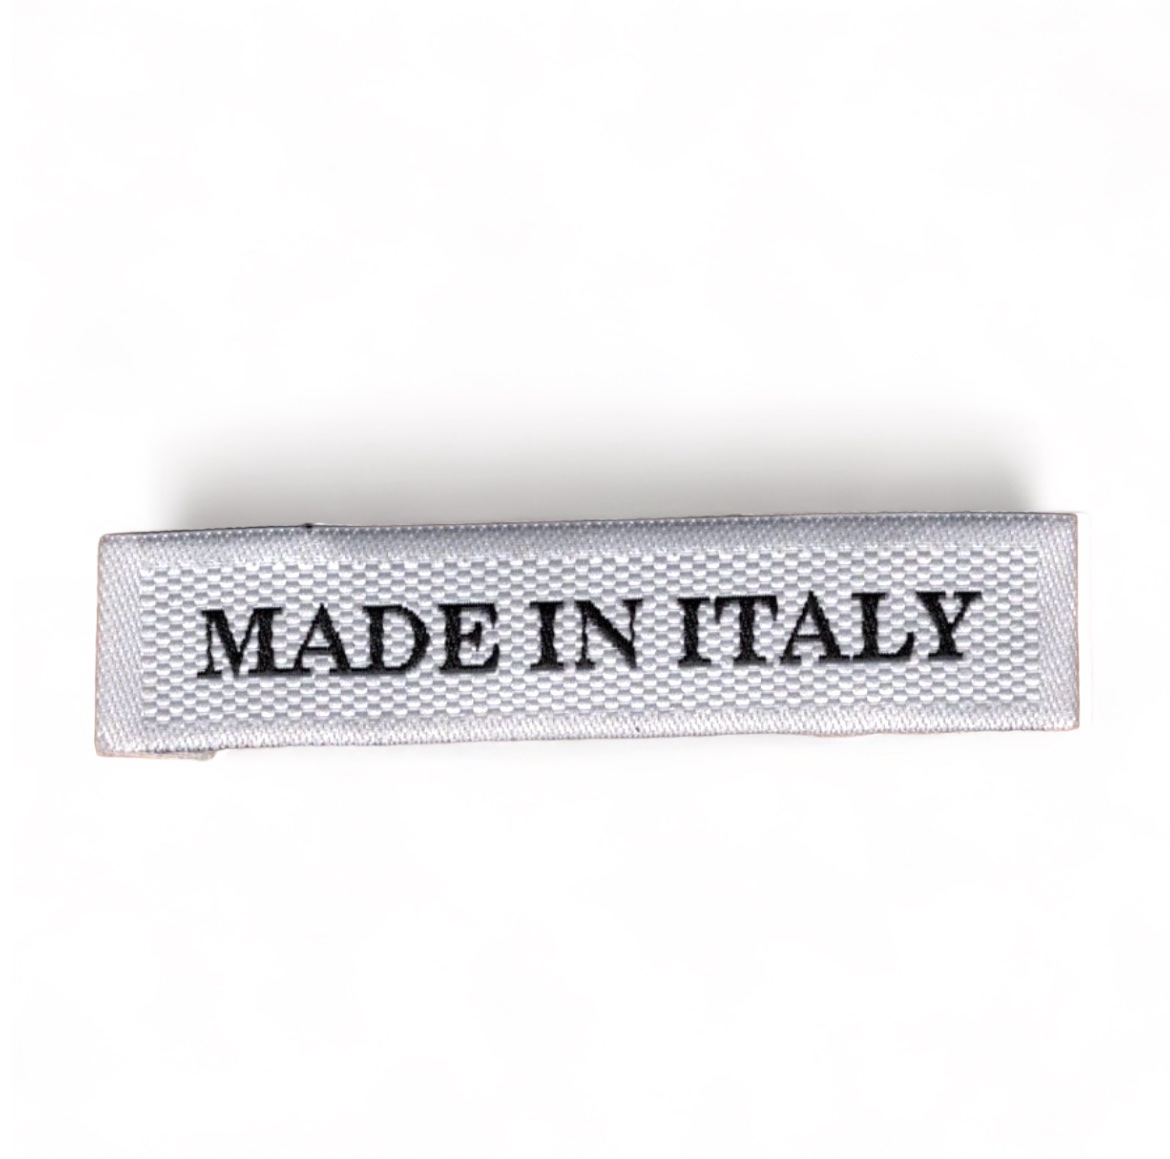 Этикетка тканевая Made in Italy 1,5см белая и черный лого /рельефная, 70 atki/, шт. Вышивка / этикетка тканевая